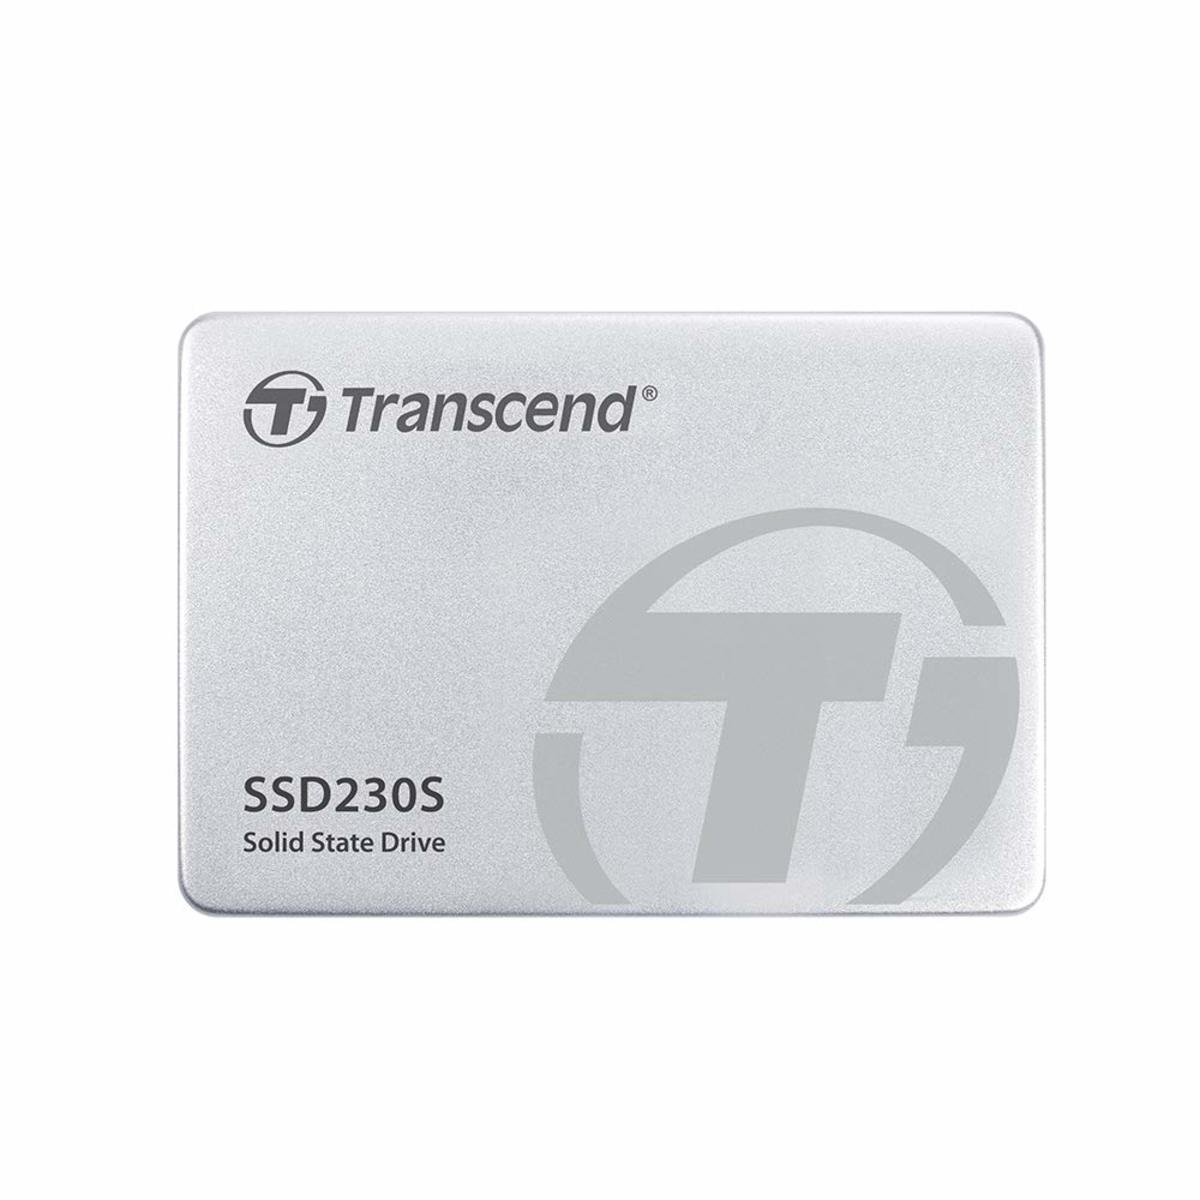 قرص صلب ترانسند 1 تيرا بايت  -  TS1TSSD230S